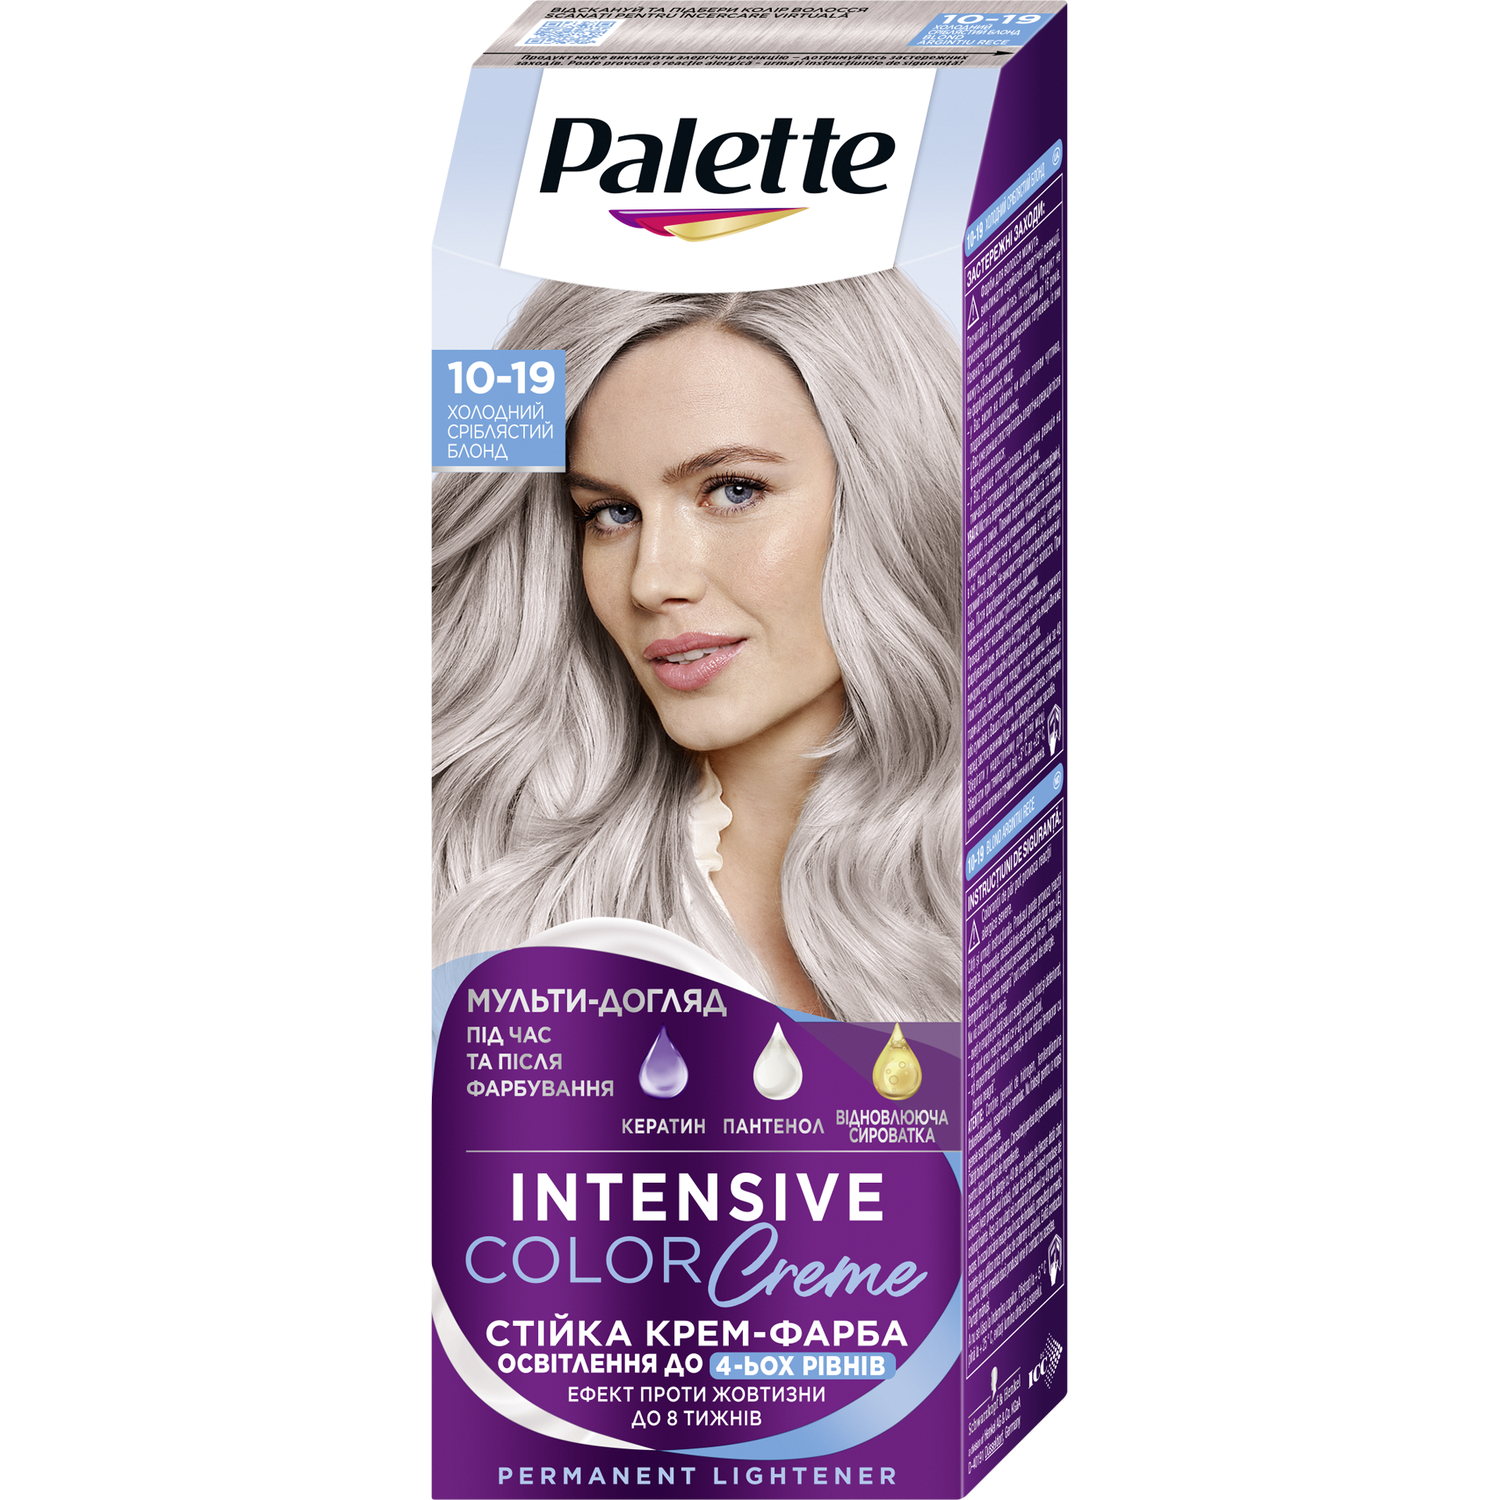 Photos - Hair Dye Schwarzkopf Фарба для волосся Palette ICC 10-19 Холодний сріблястий блонд 110 мл (2639 